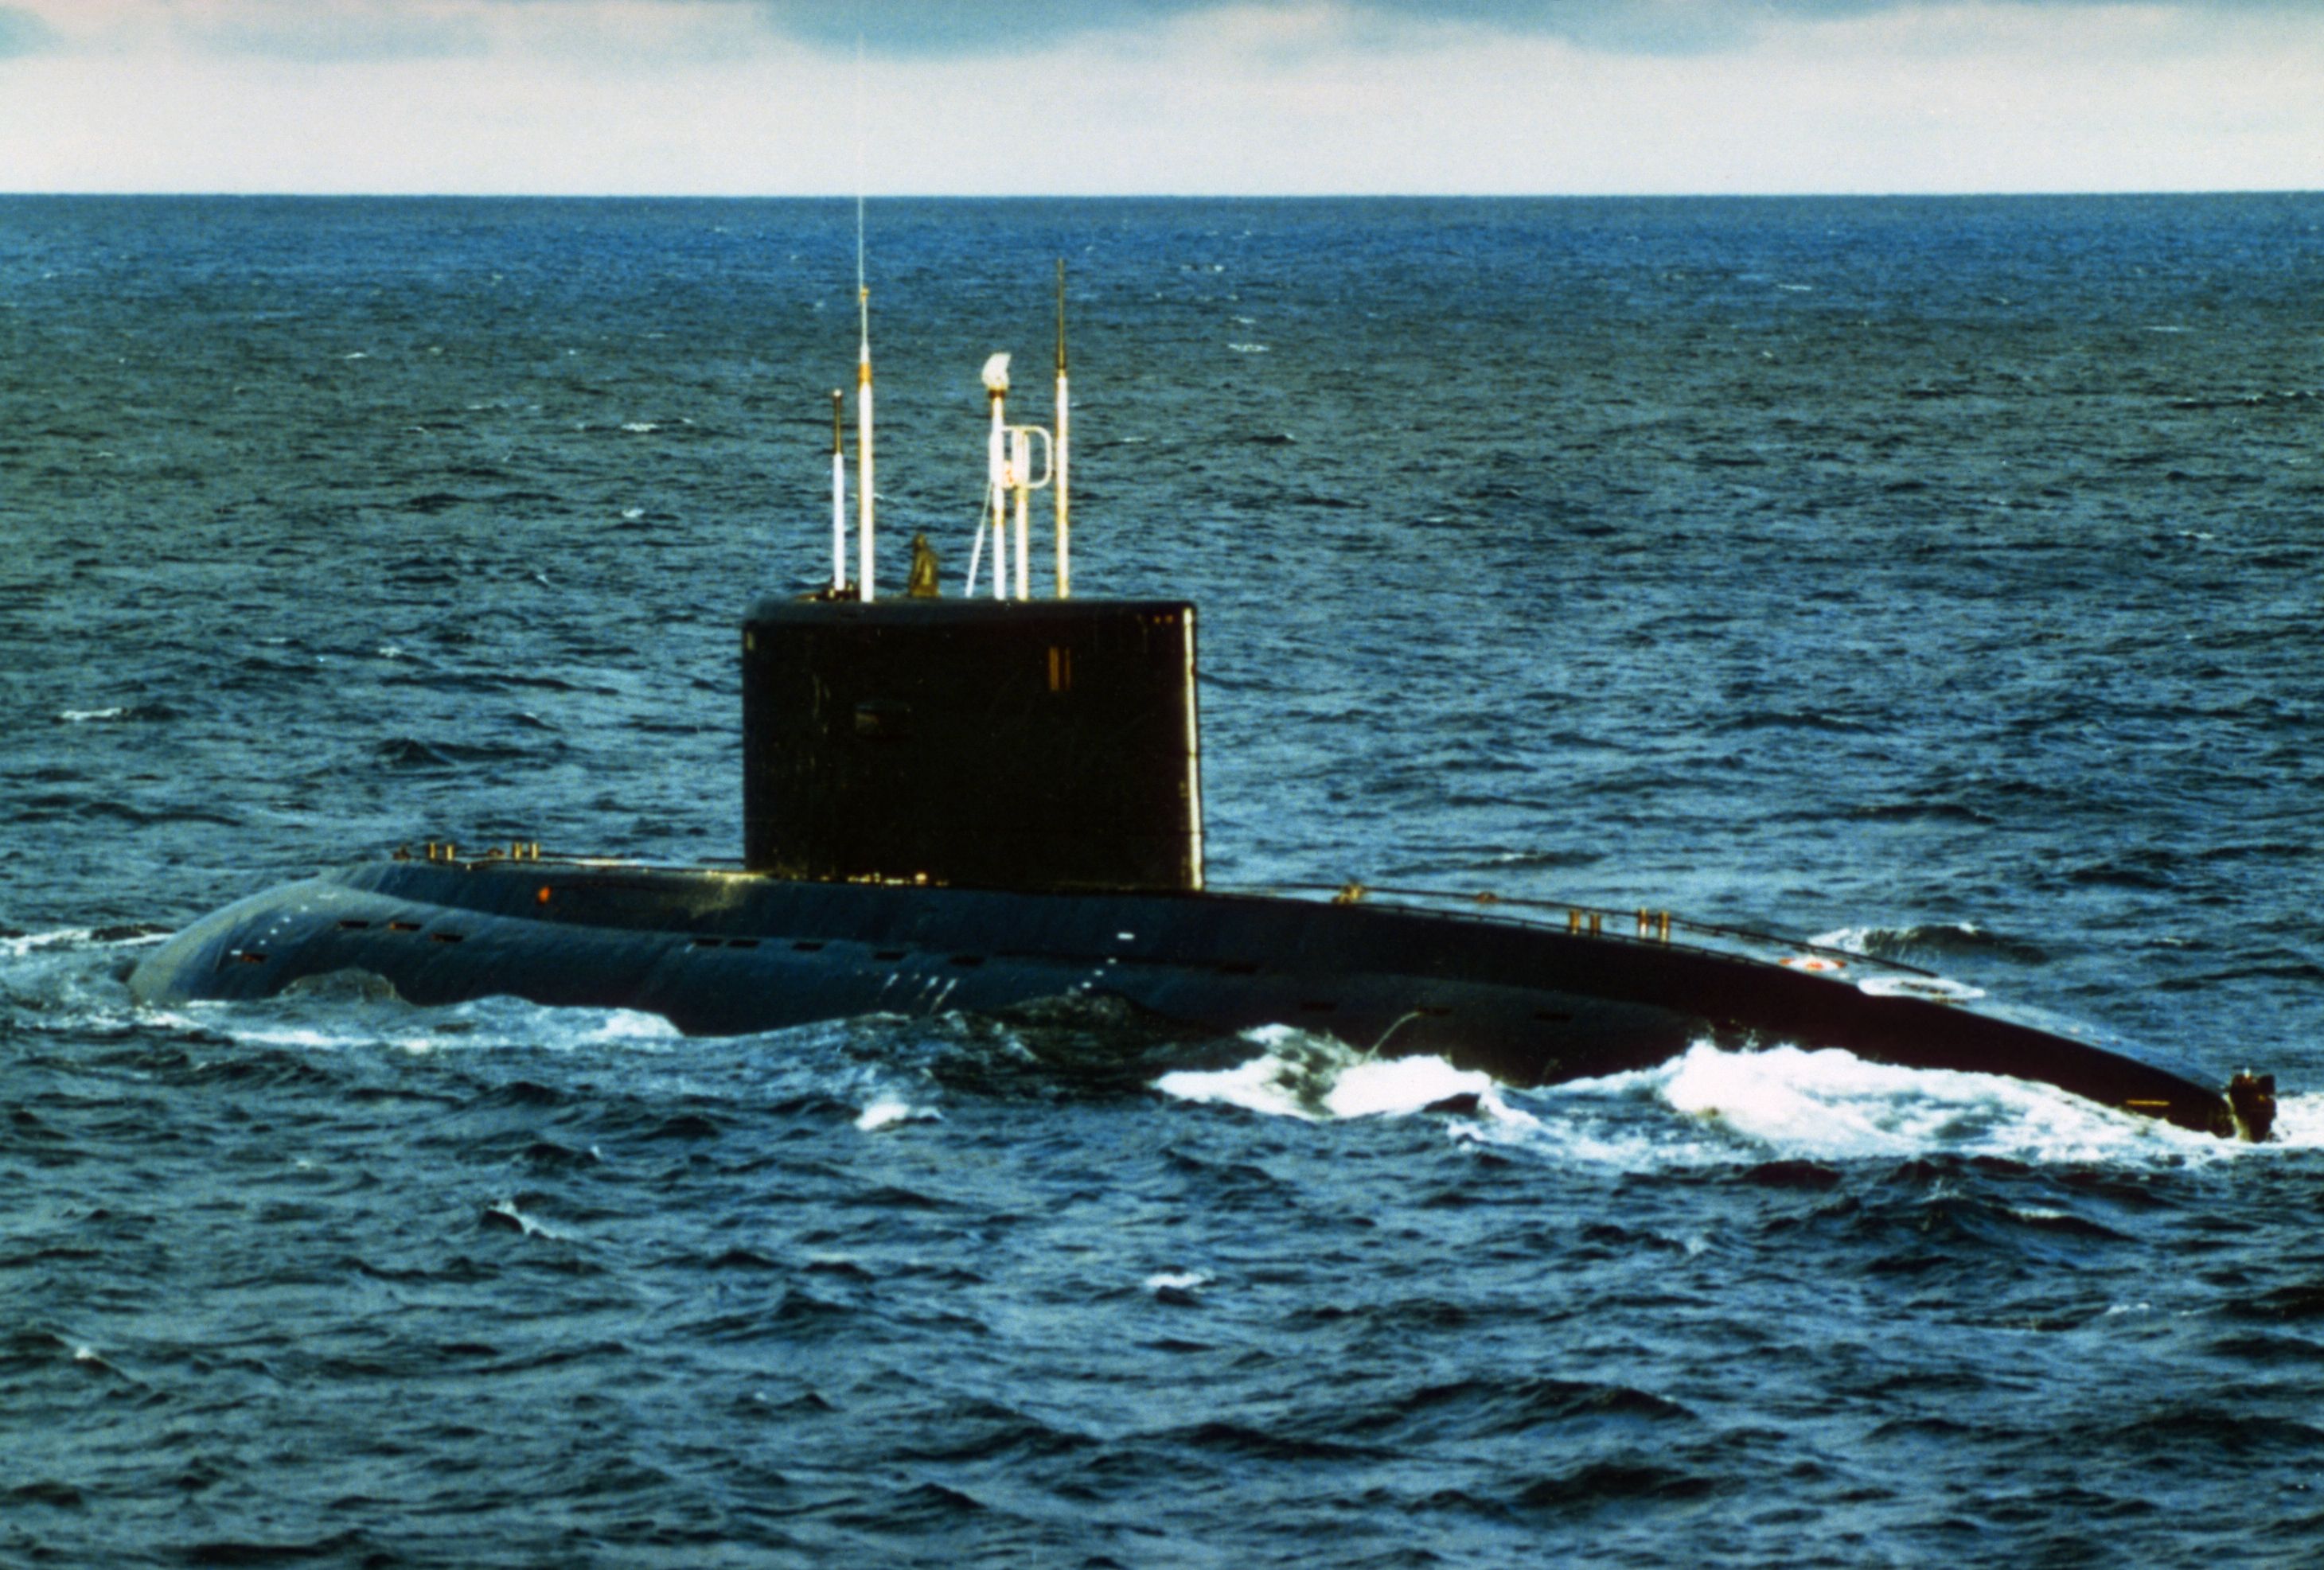 Jelentés: A szupercsendes orosz tengeralattjárók a brit vizeken vannak, és szorongatják a haditengerészetet